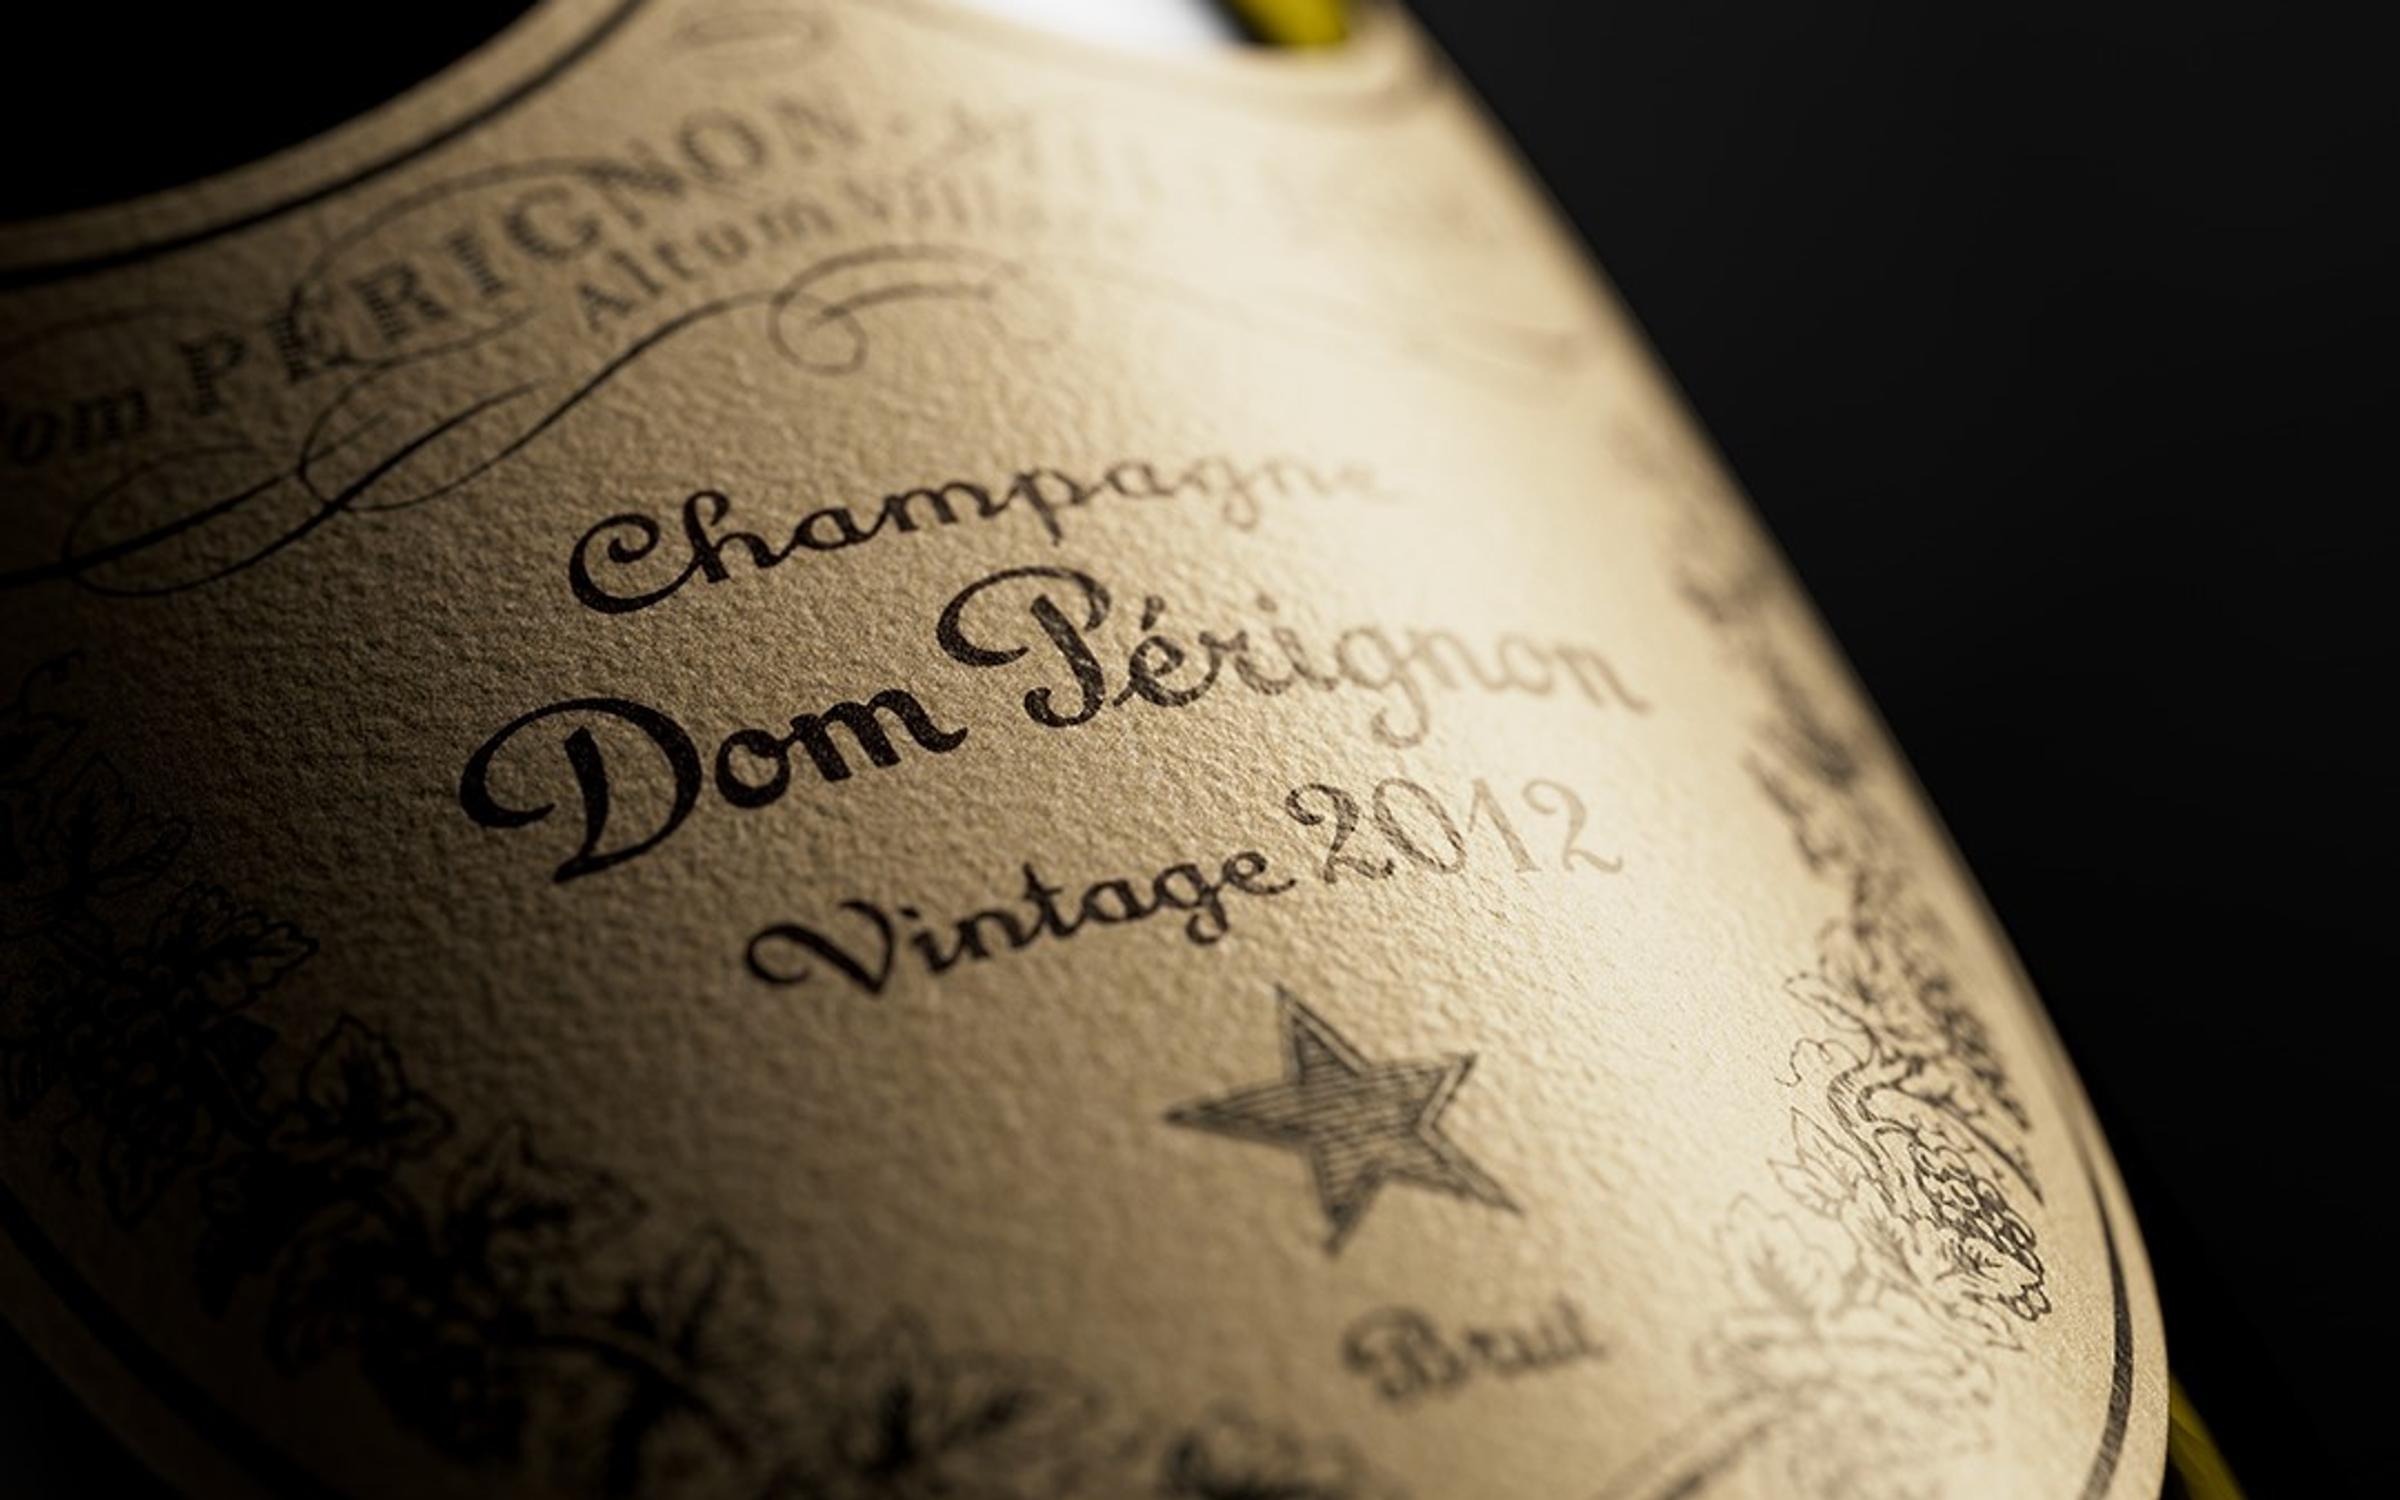 Dom Pérignon is vintage only